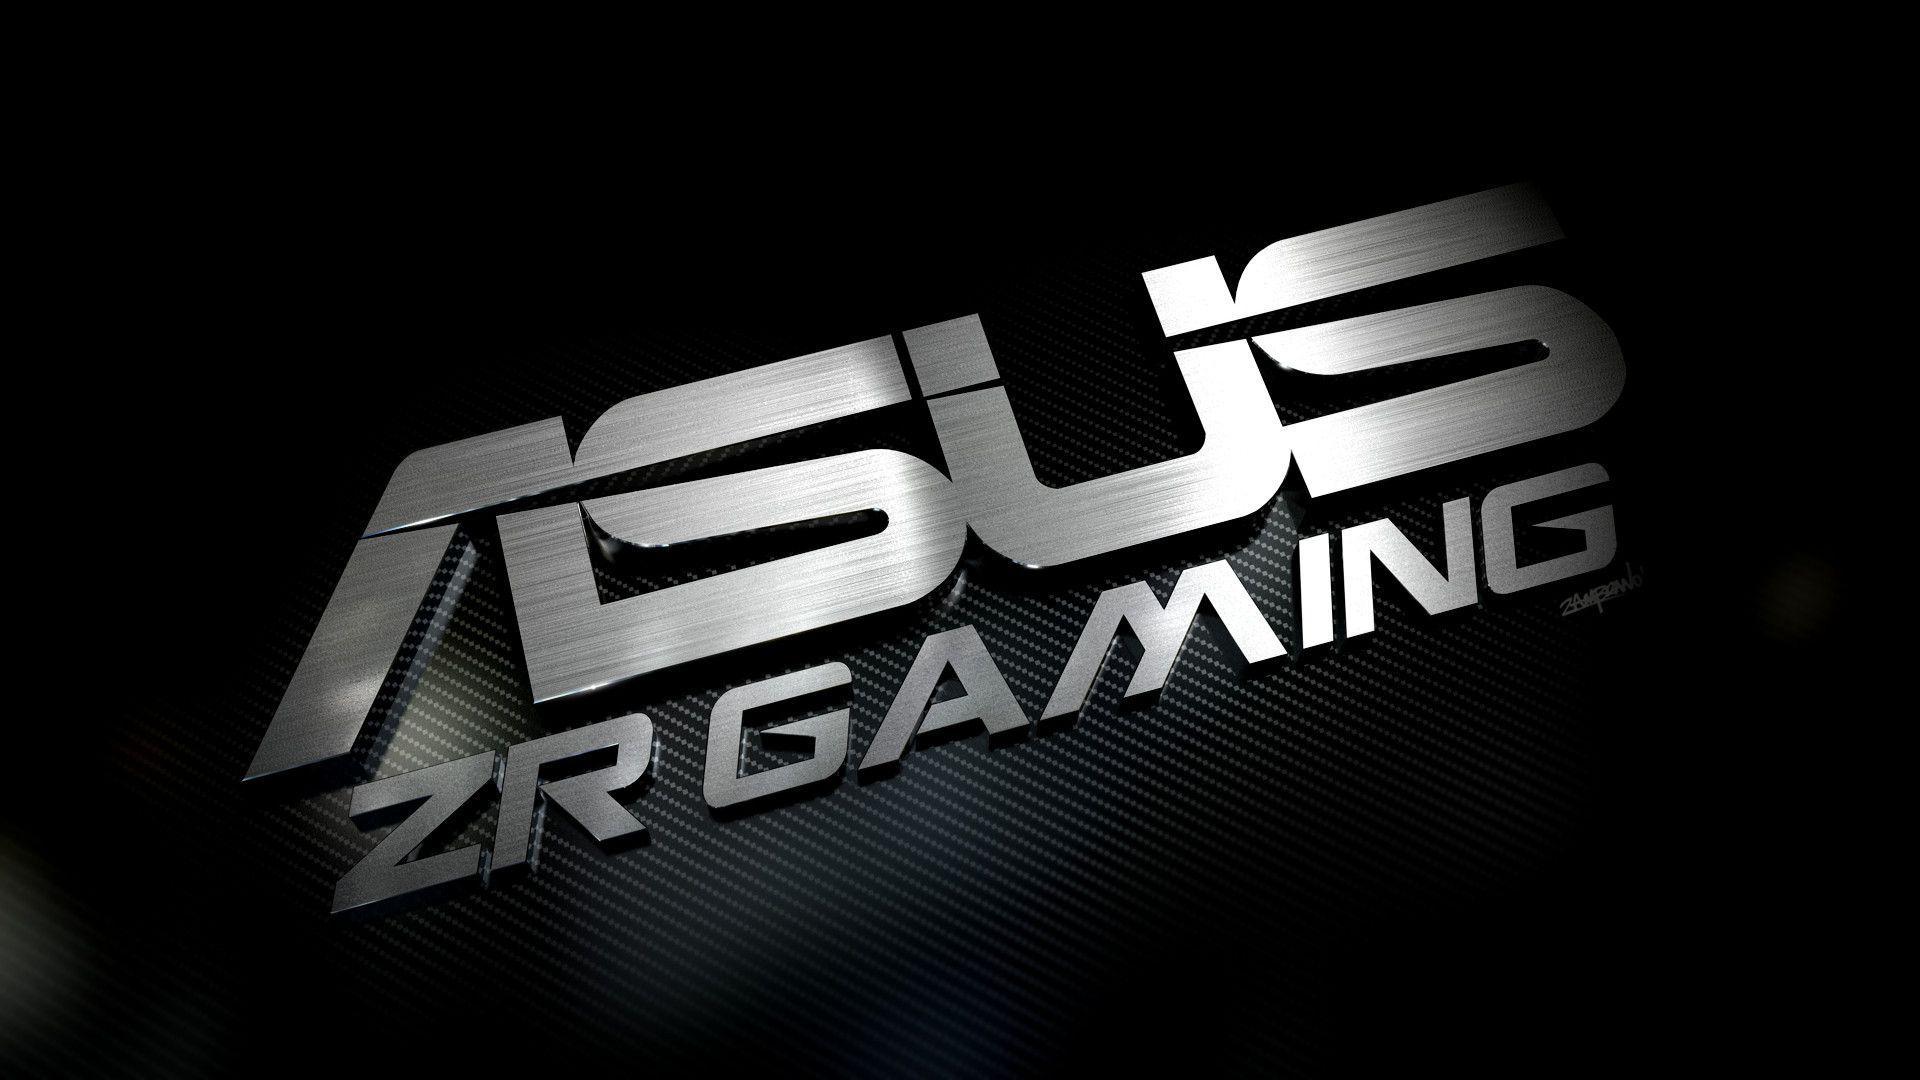 Asus Wallpaper: Asus Zr Gaming HD Wallpaper. .Ssofc